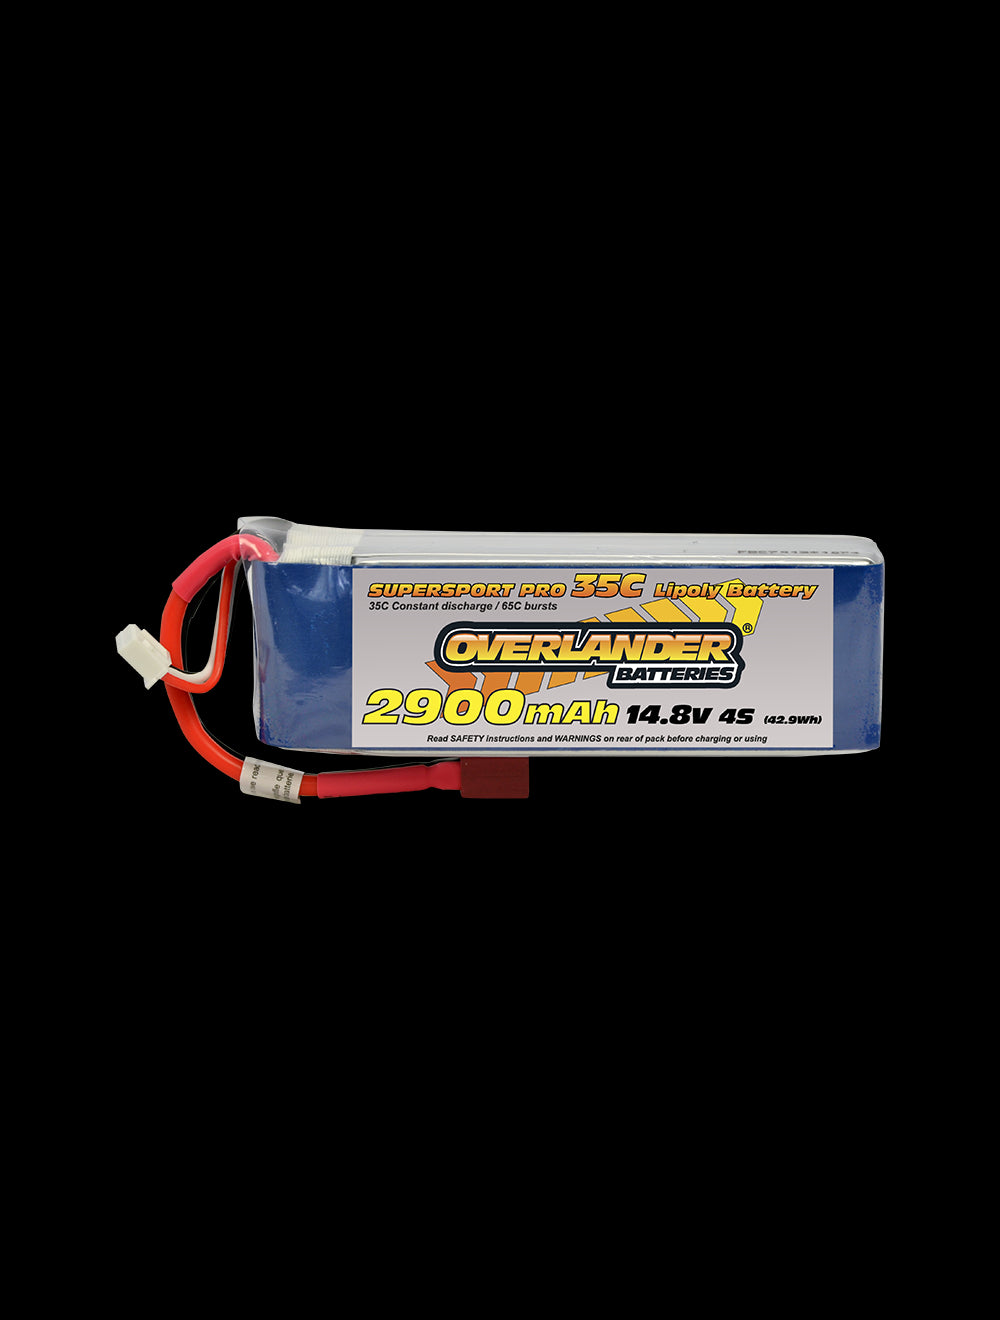 Overlander 2900mAh 14.8V 4S 35C Supersport Pro LiPo Battery - EC3 Connector 2959